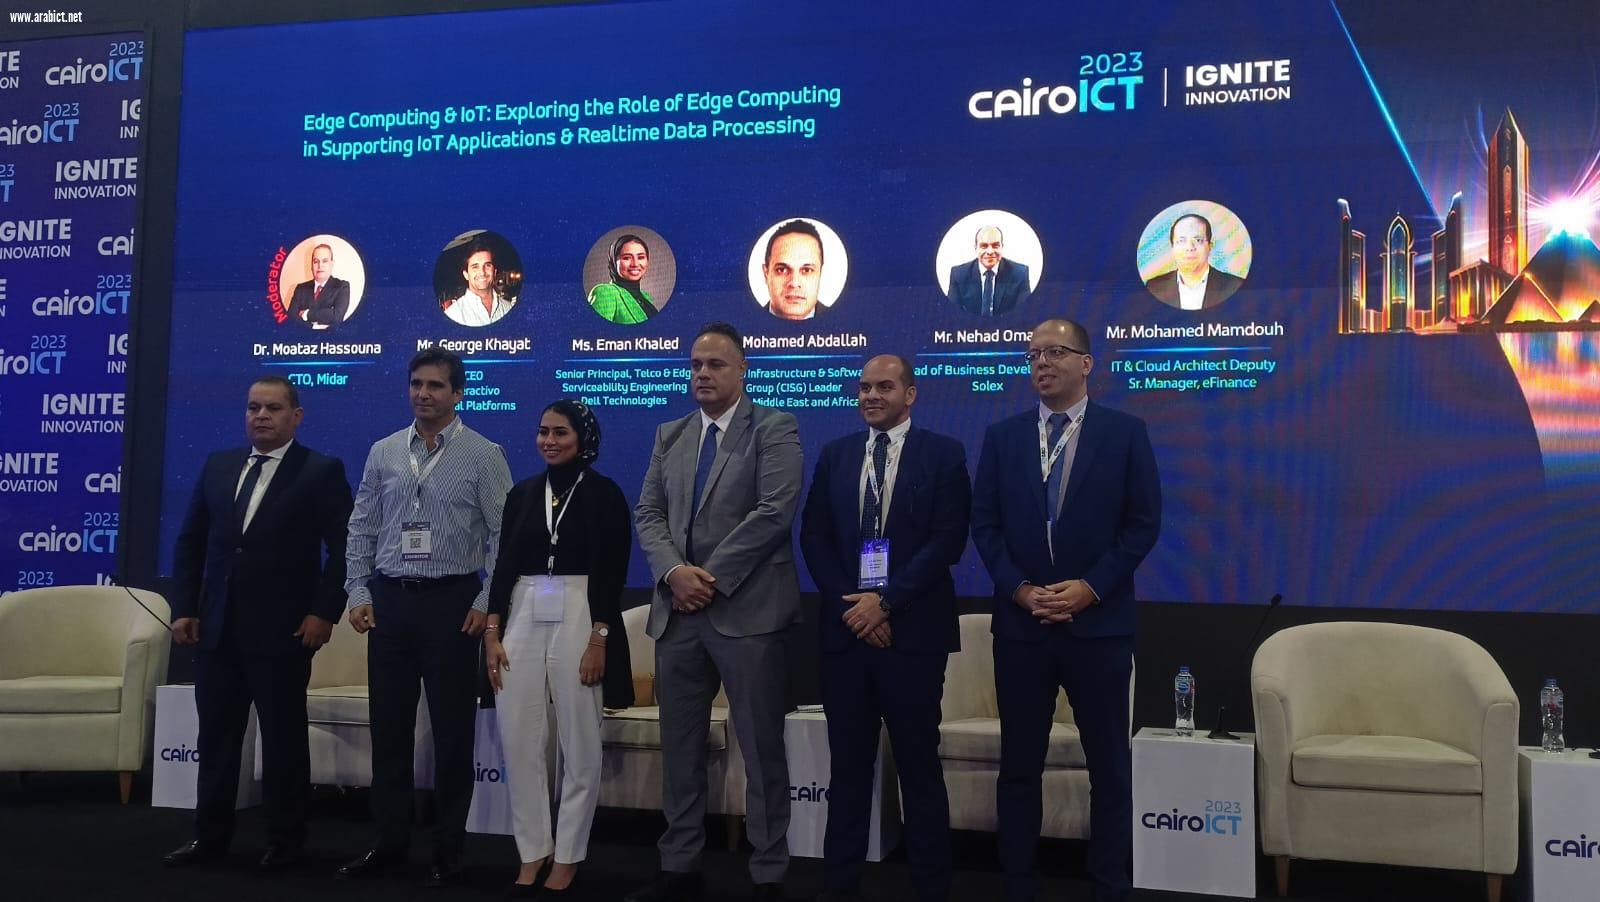 جلسة بمعرض  Cairo ICT توضح أهمية التكامل بين تقنيات إنترنت الأشياء والحوسبة الطرفية لتحسين معالجة البيانات وكفاءة تخزينها